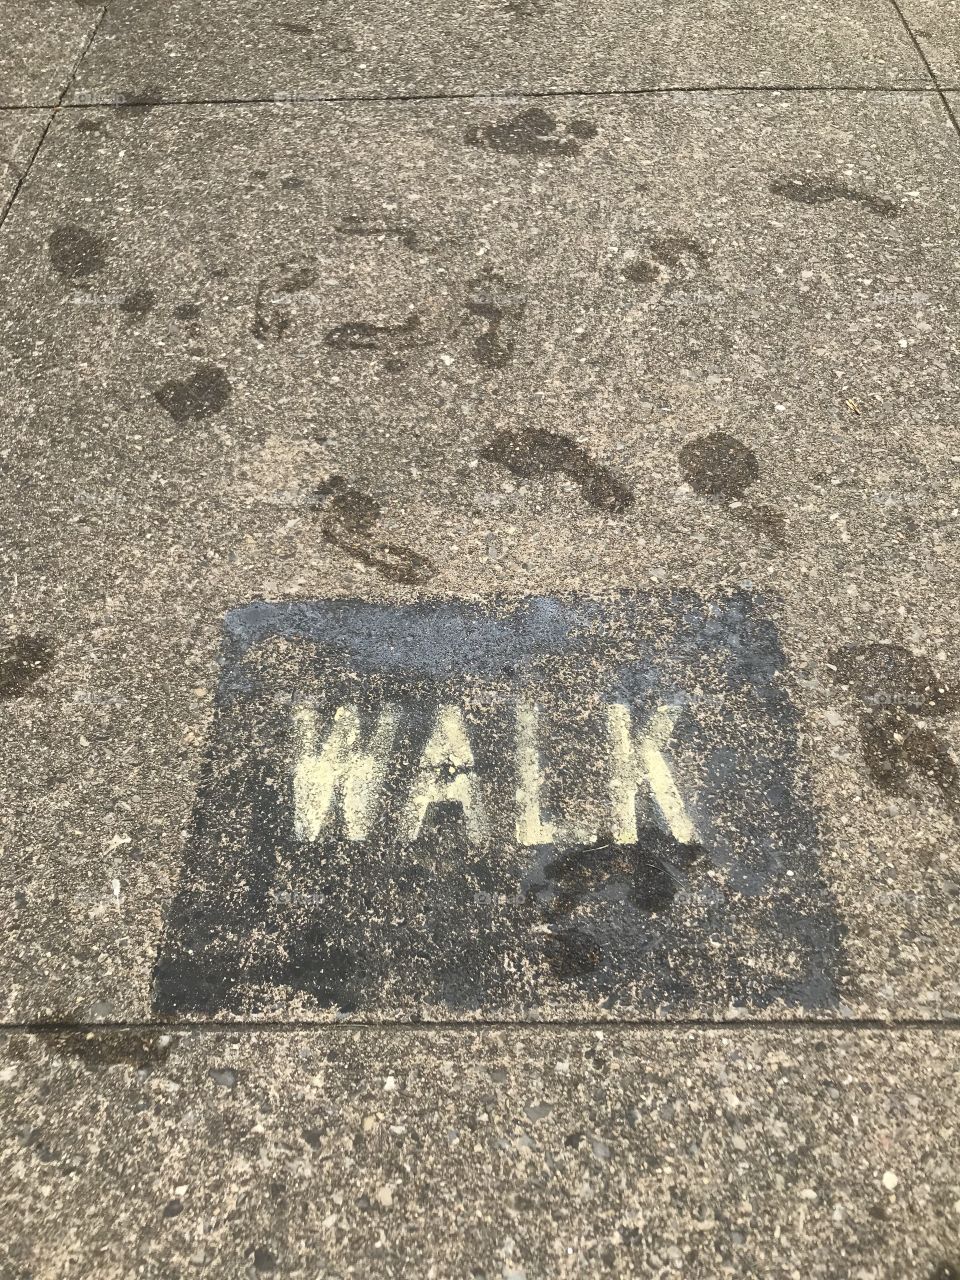 Sidewalk walk only 